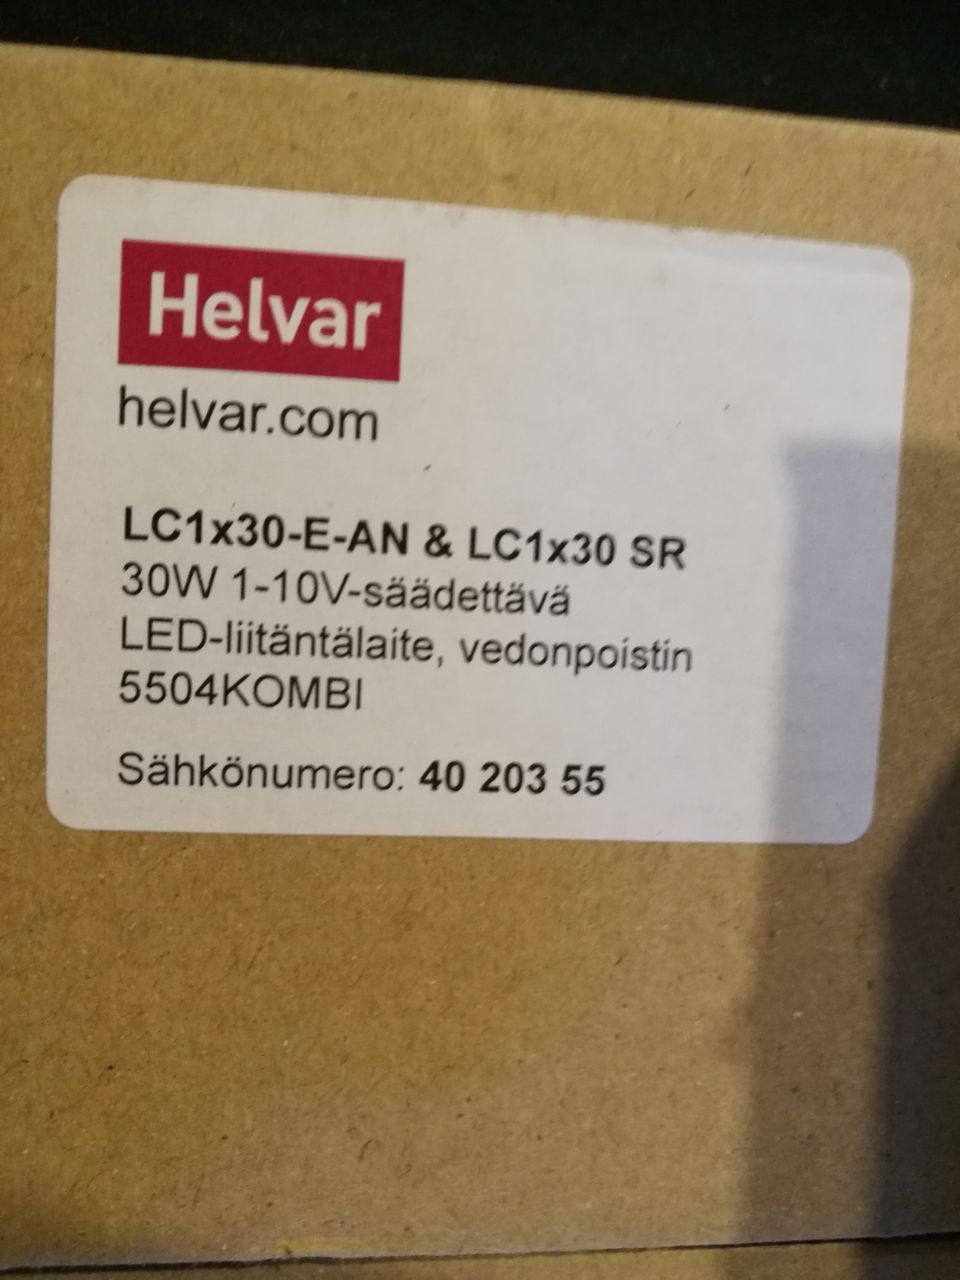 Helvar LED-liitäntälaite - LC1x30-E-AN & LC1x30